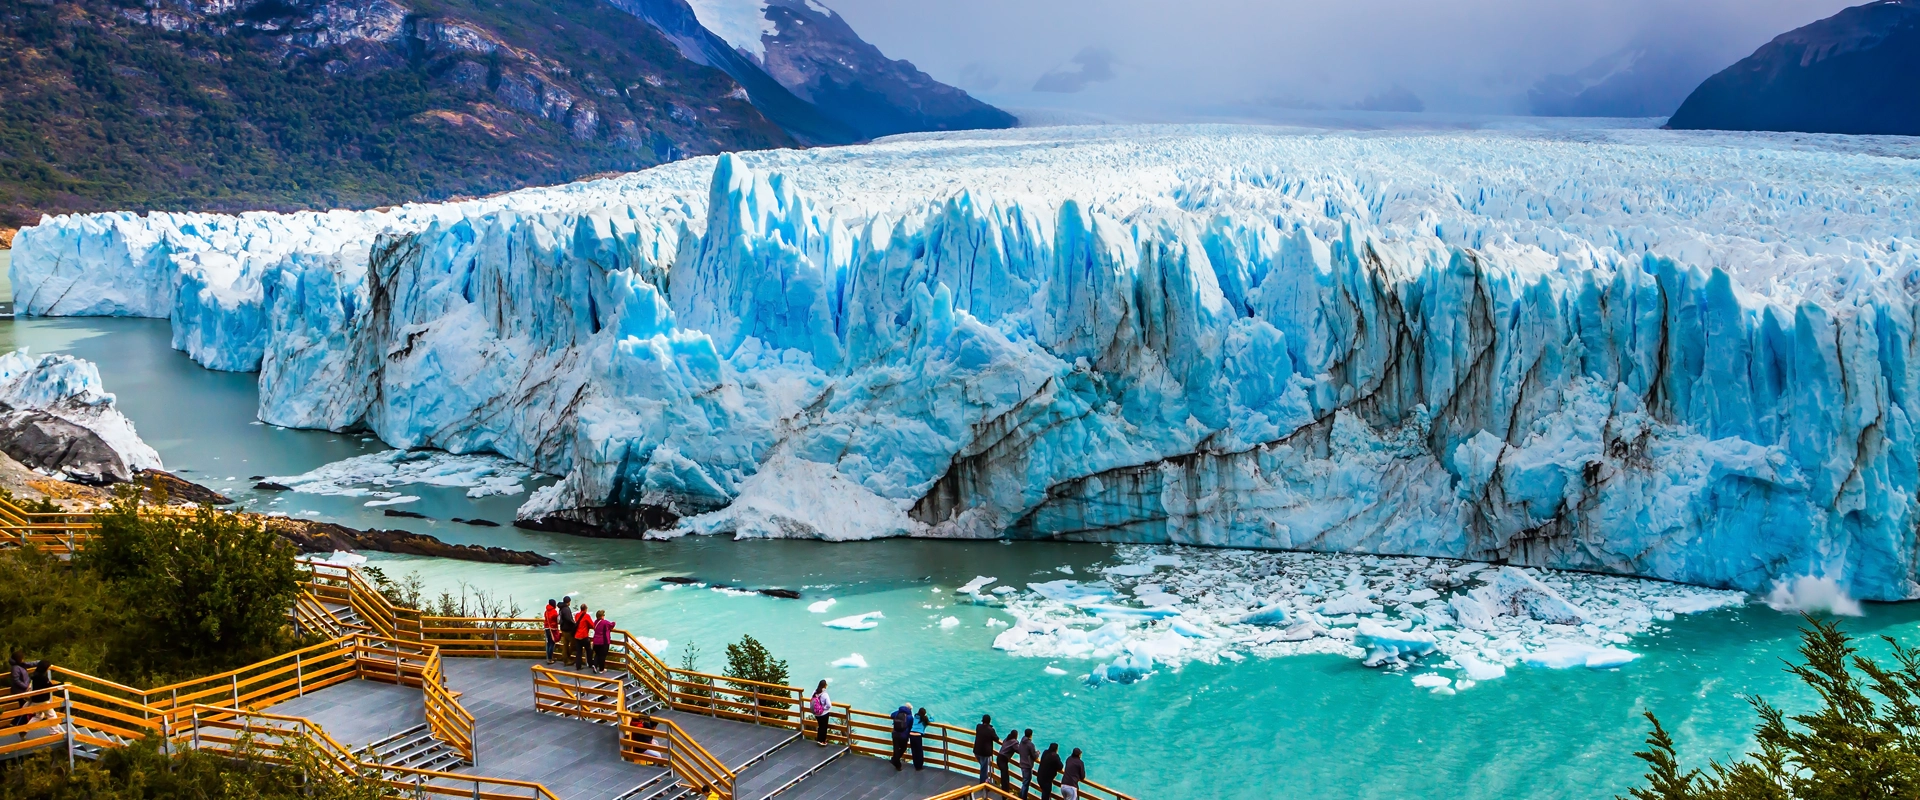 voyage argentine glacier perito moreno